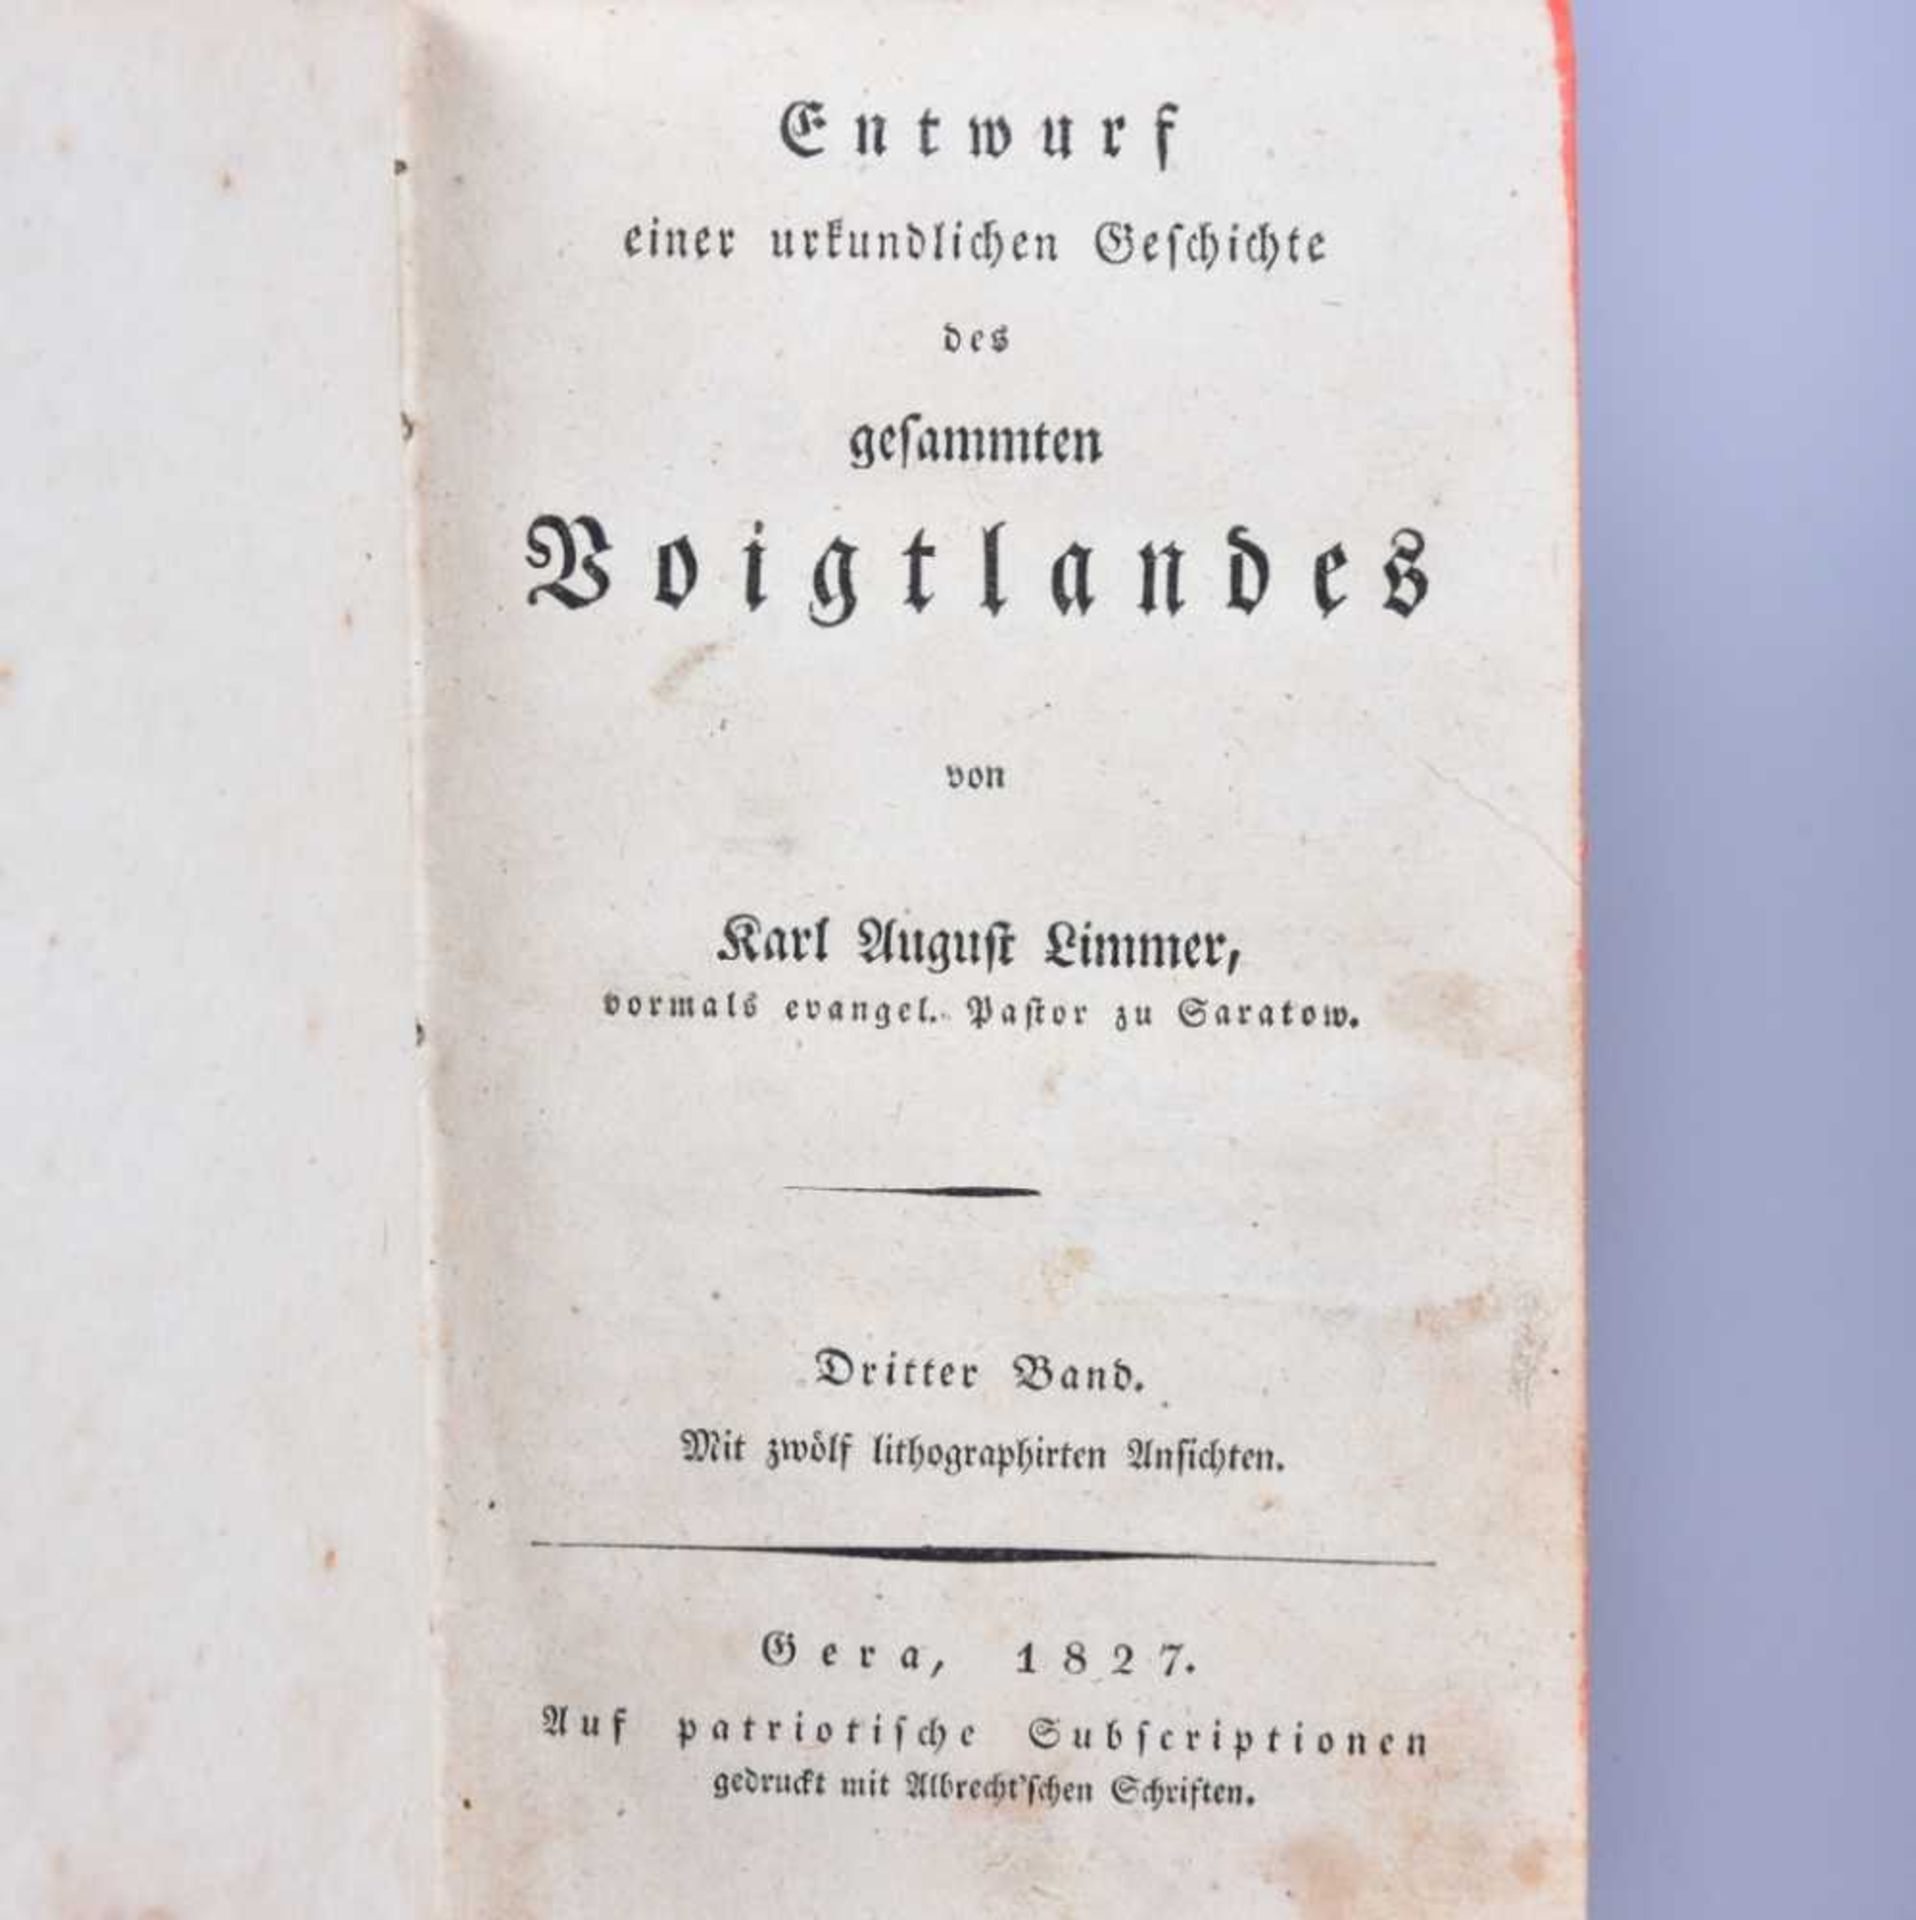 ,, Entwurf einer urkundlichen Geschichte des gesammten Voigtlandes", Karl August Limmer, 3. Band,